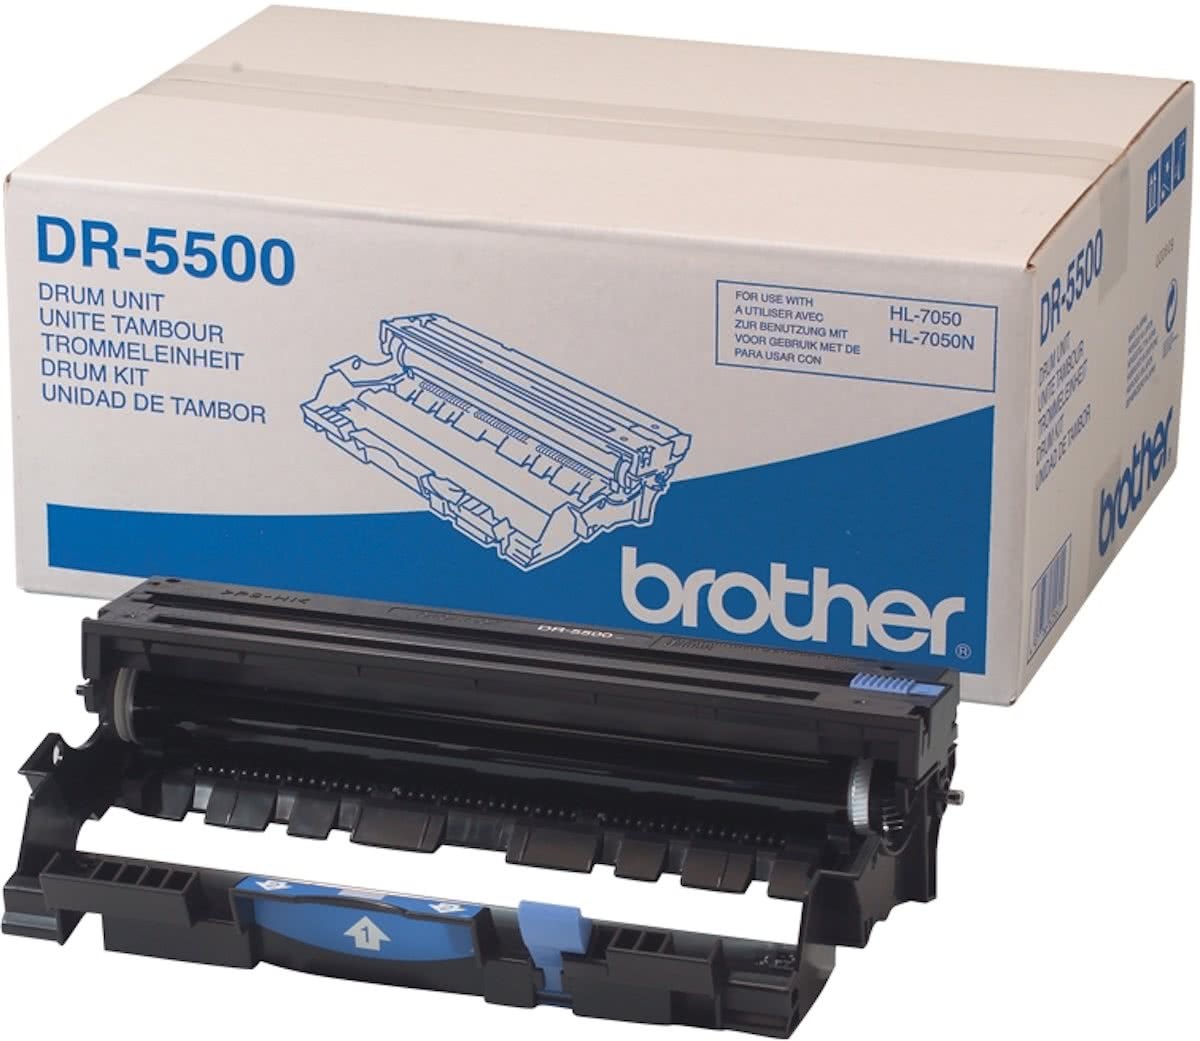 Brother Drum DR-5500 voor laser printer HL-7050 / HL-7050N DR5500 drumunit HL7050 OPC 40.000 afdrukken